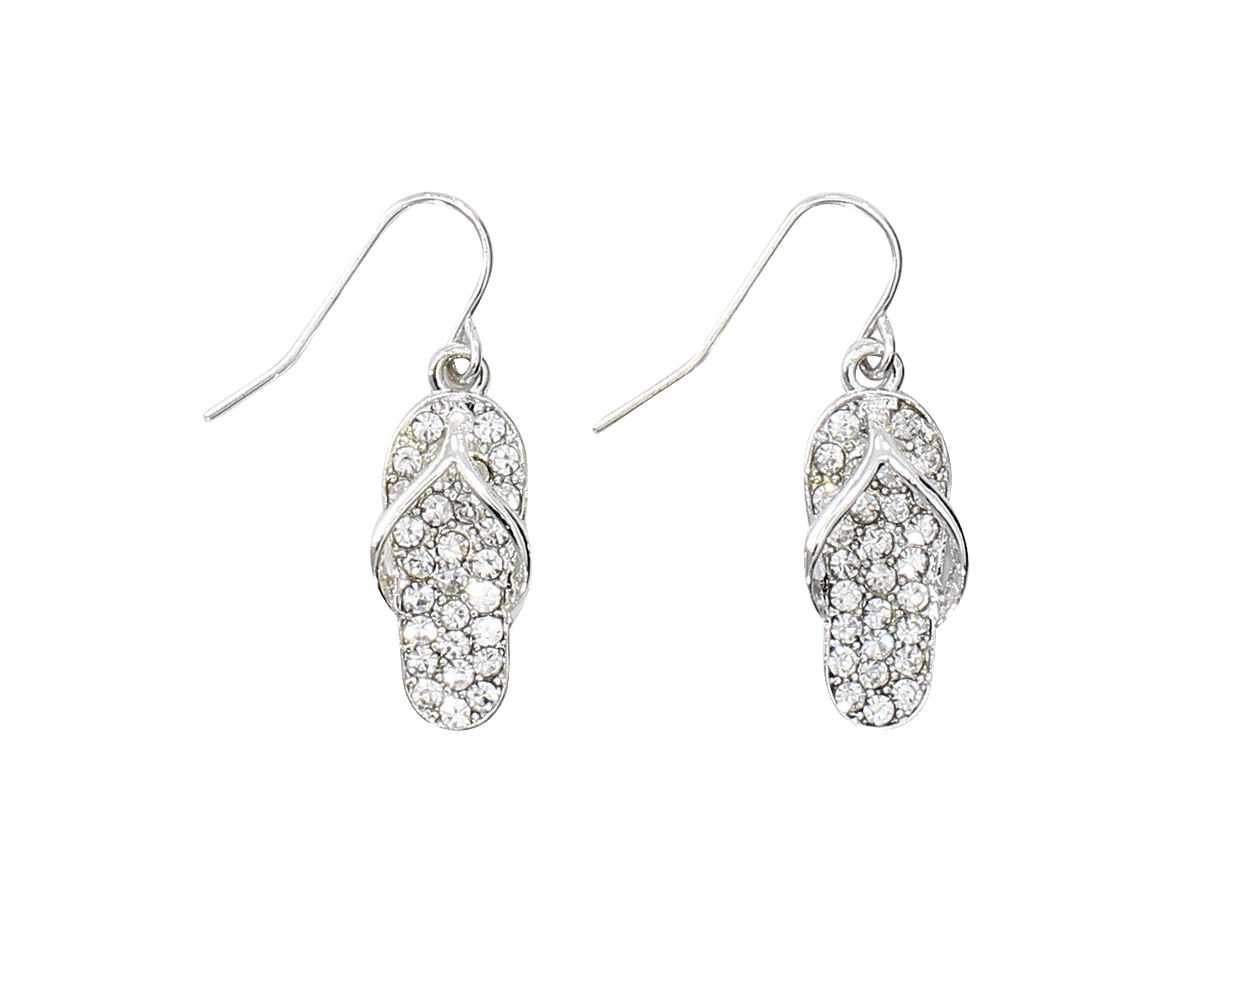 Periwinkle Silver Flip-Flop Earrings